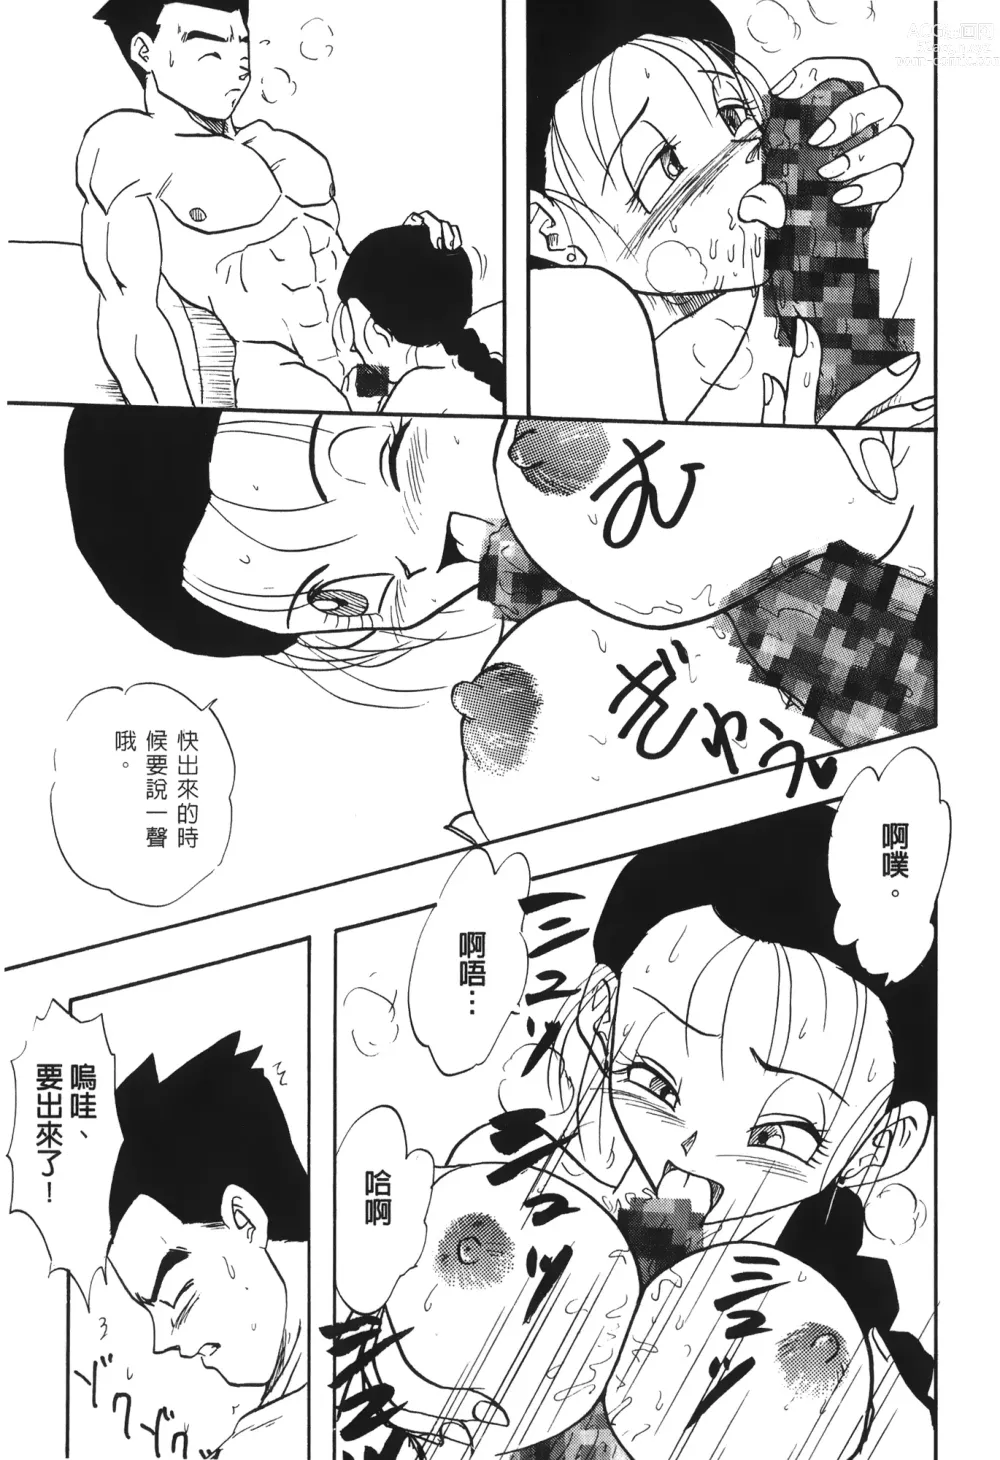 Page 151 of doujinshi ドラゴンパール 03